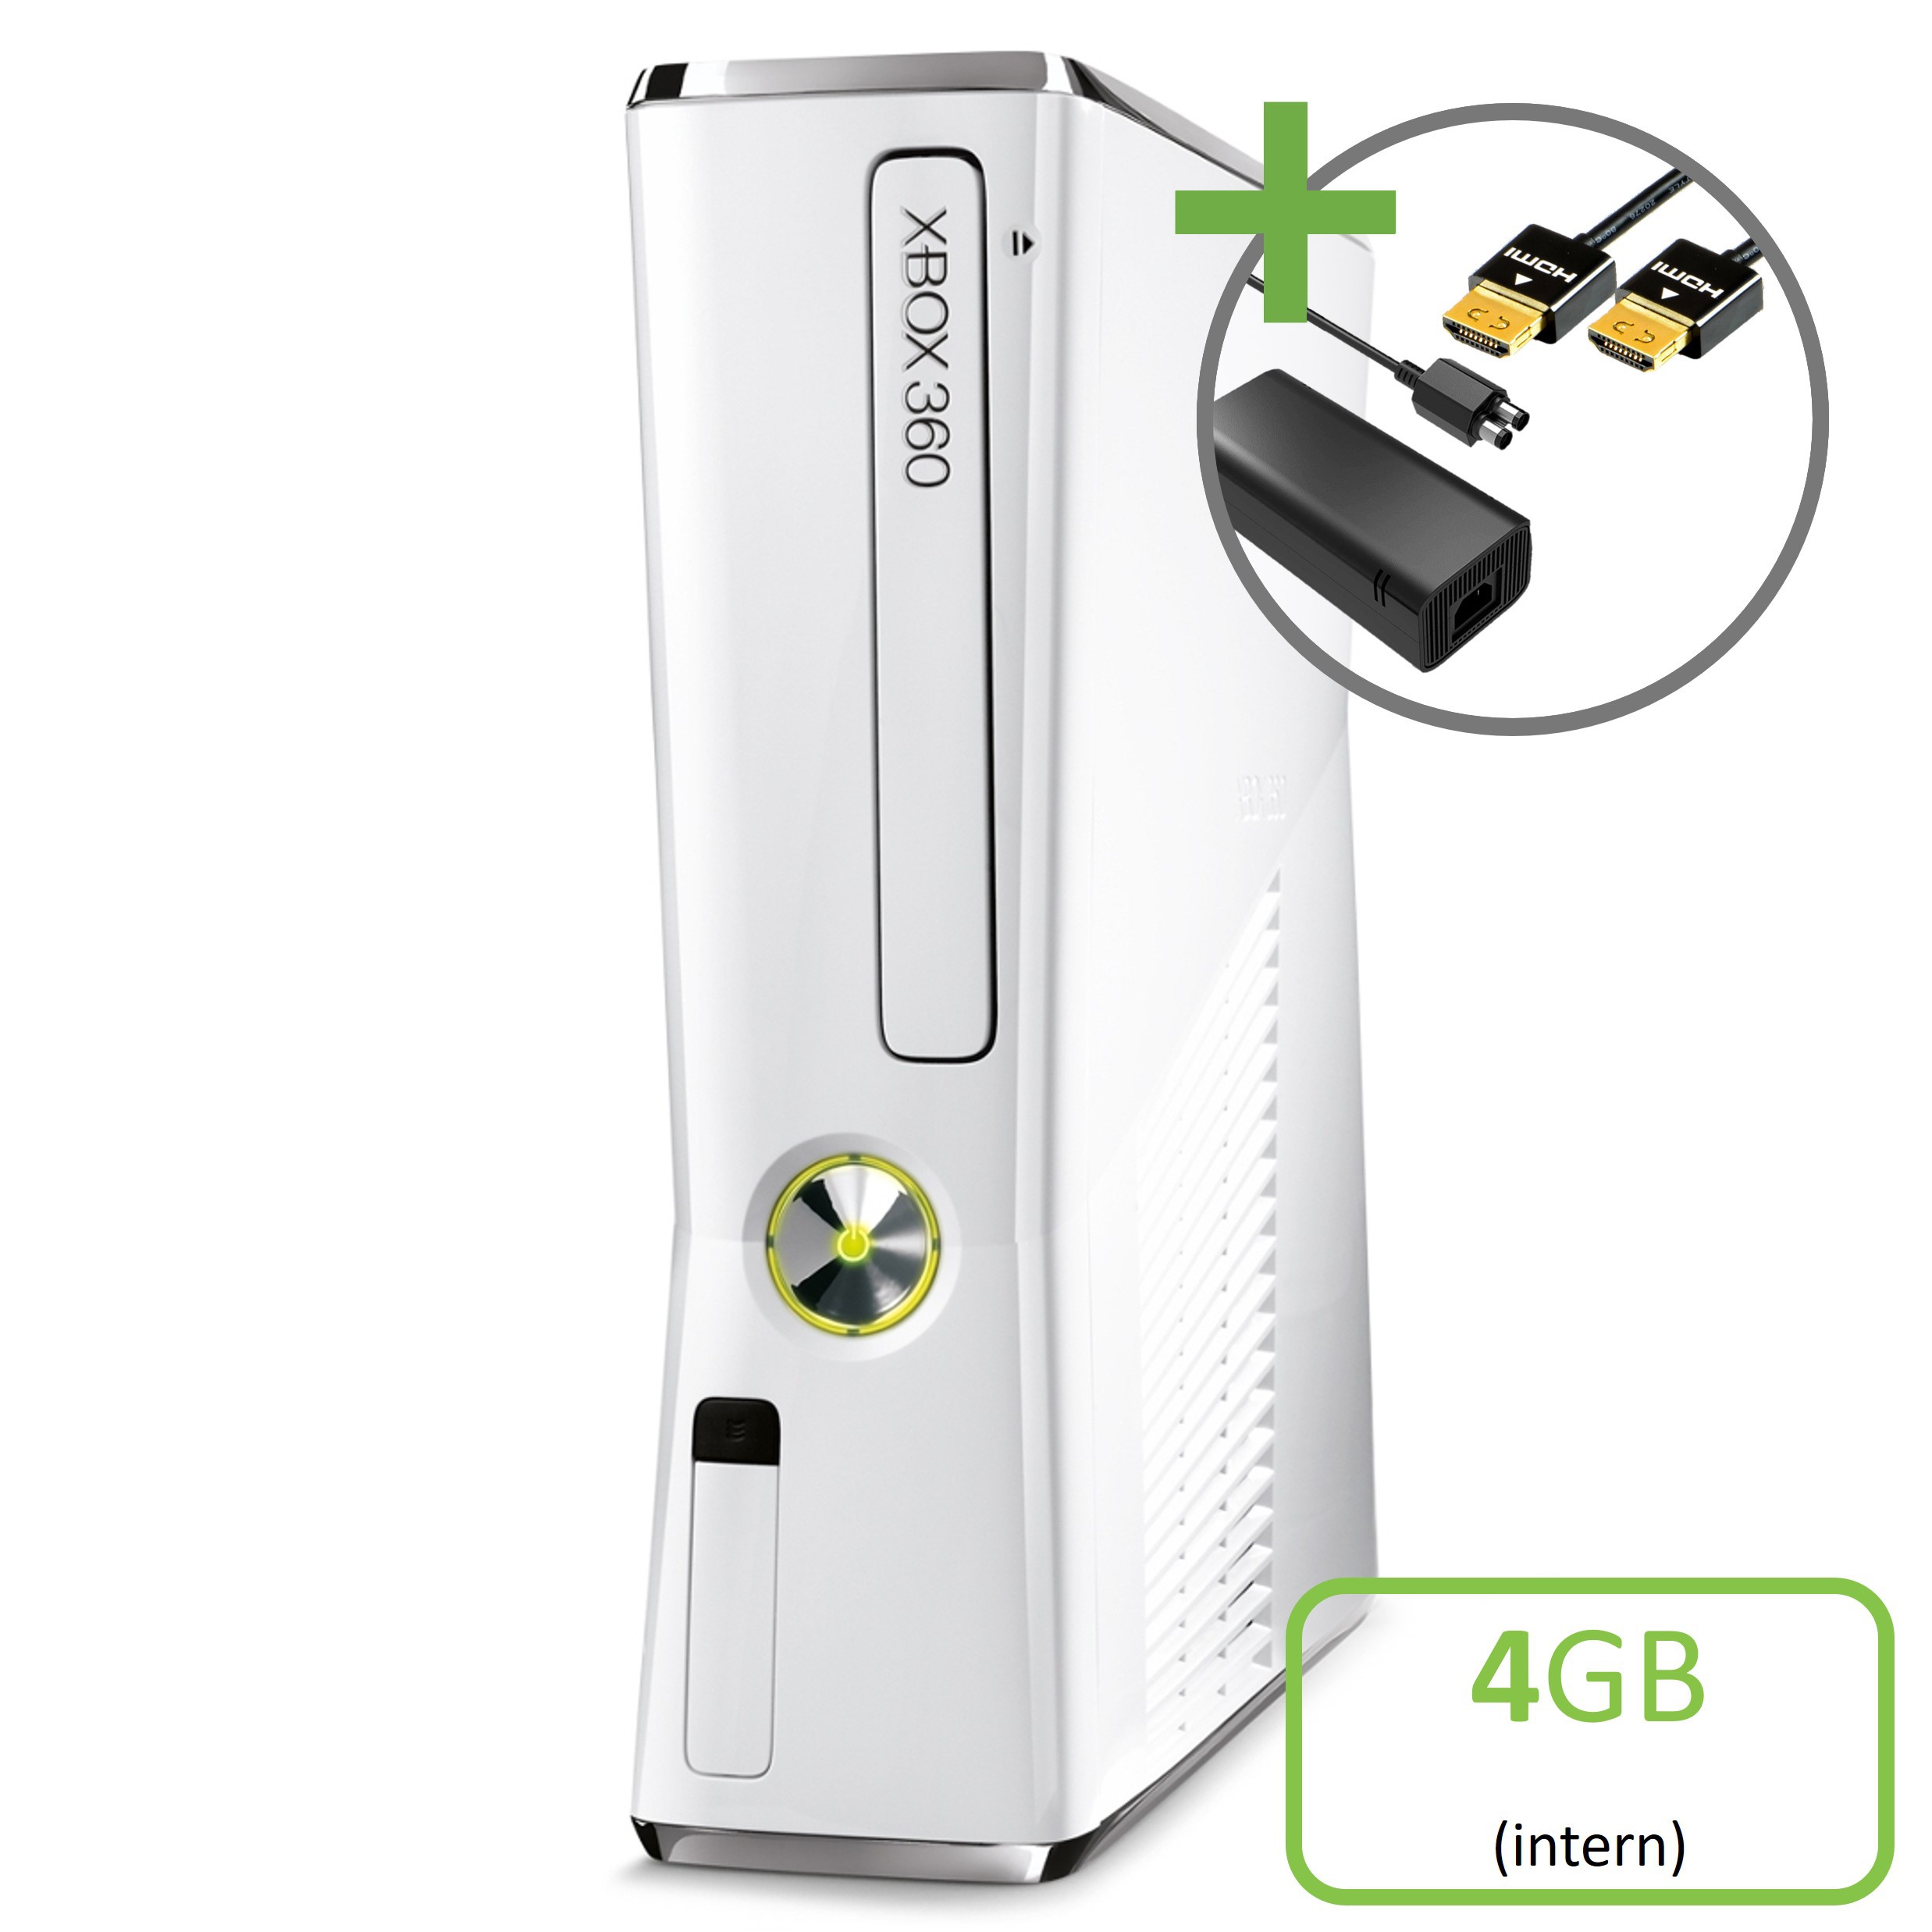 Microsoft Xbox 360 Slim Console White (4GB) - Xbox 360 Hardware